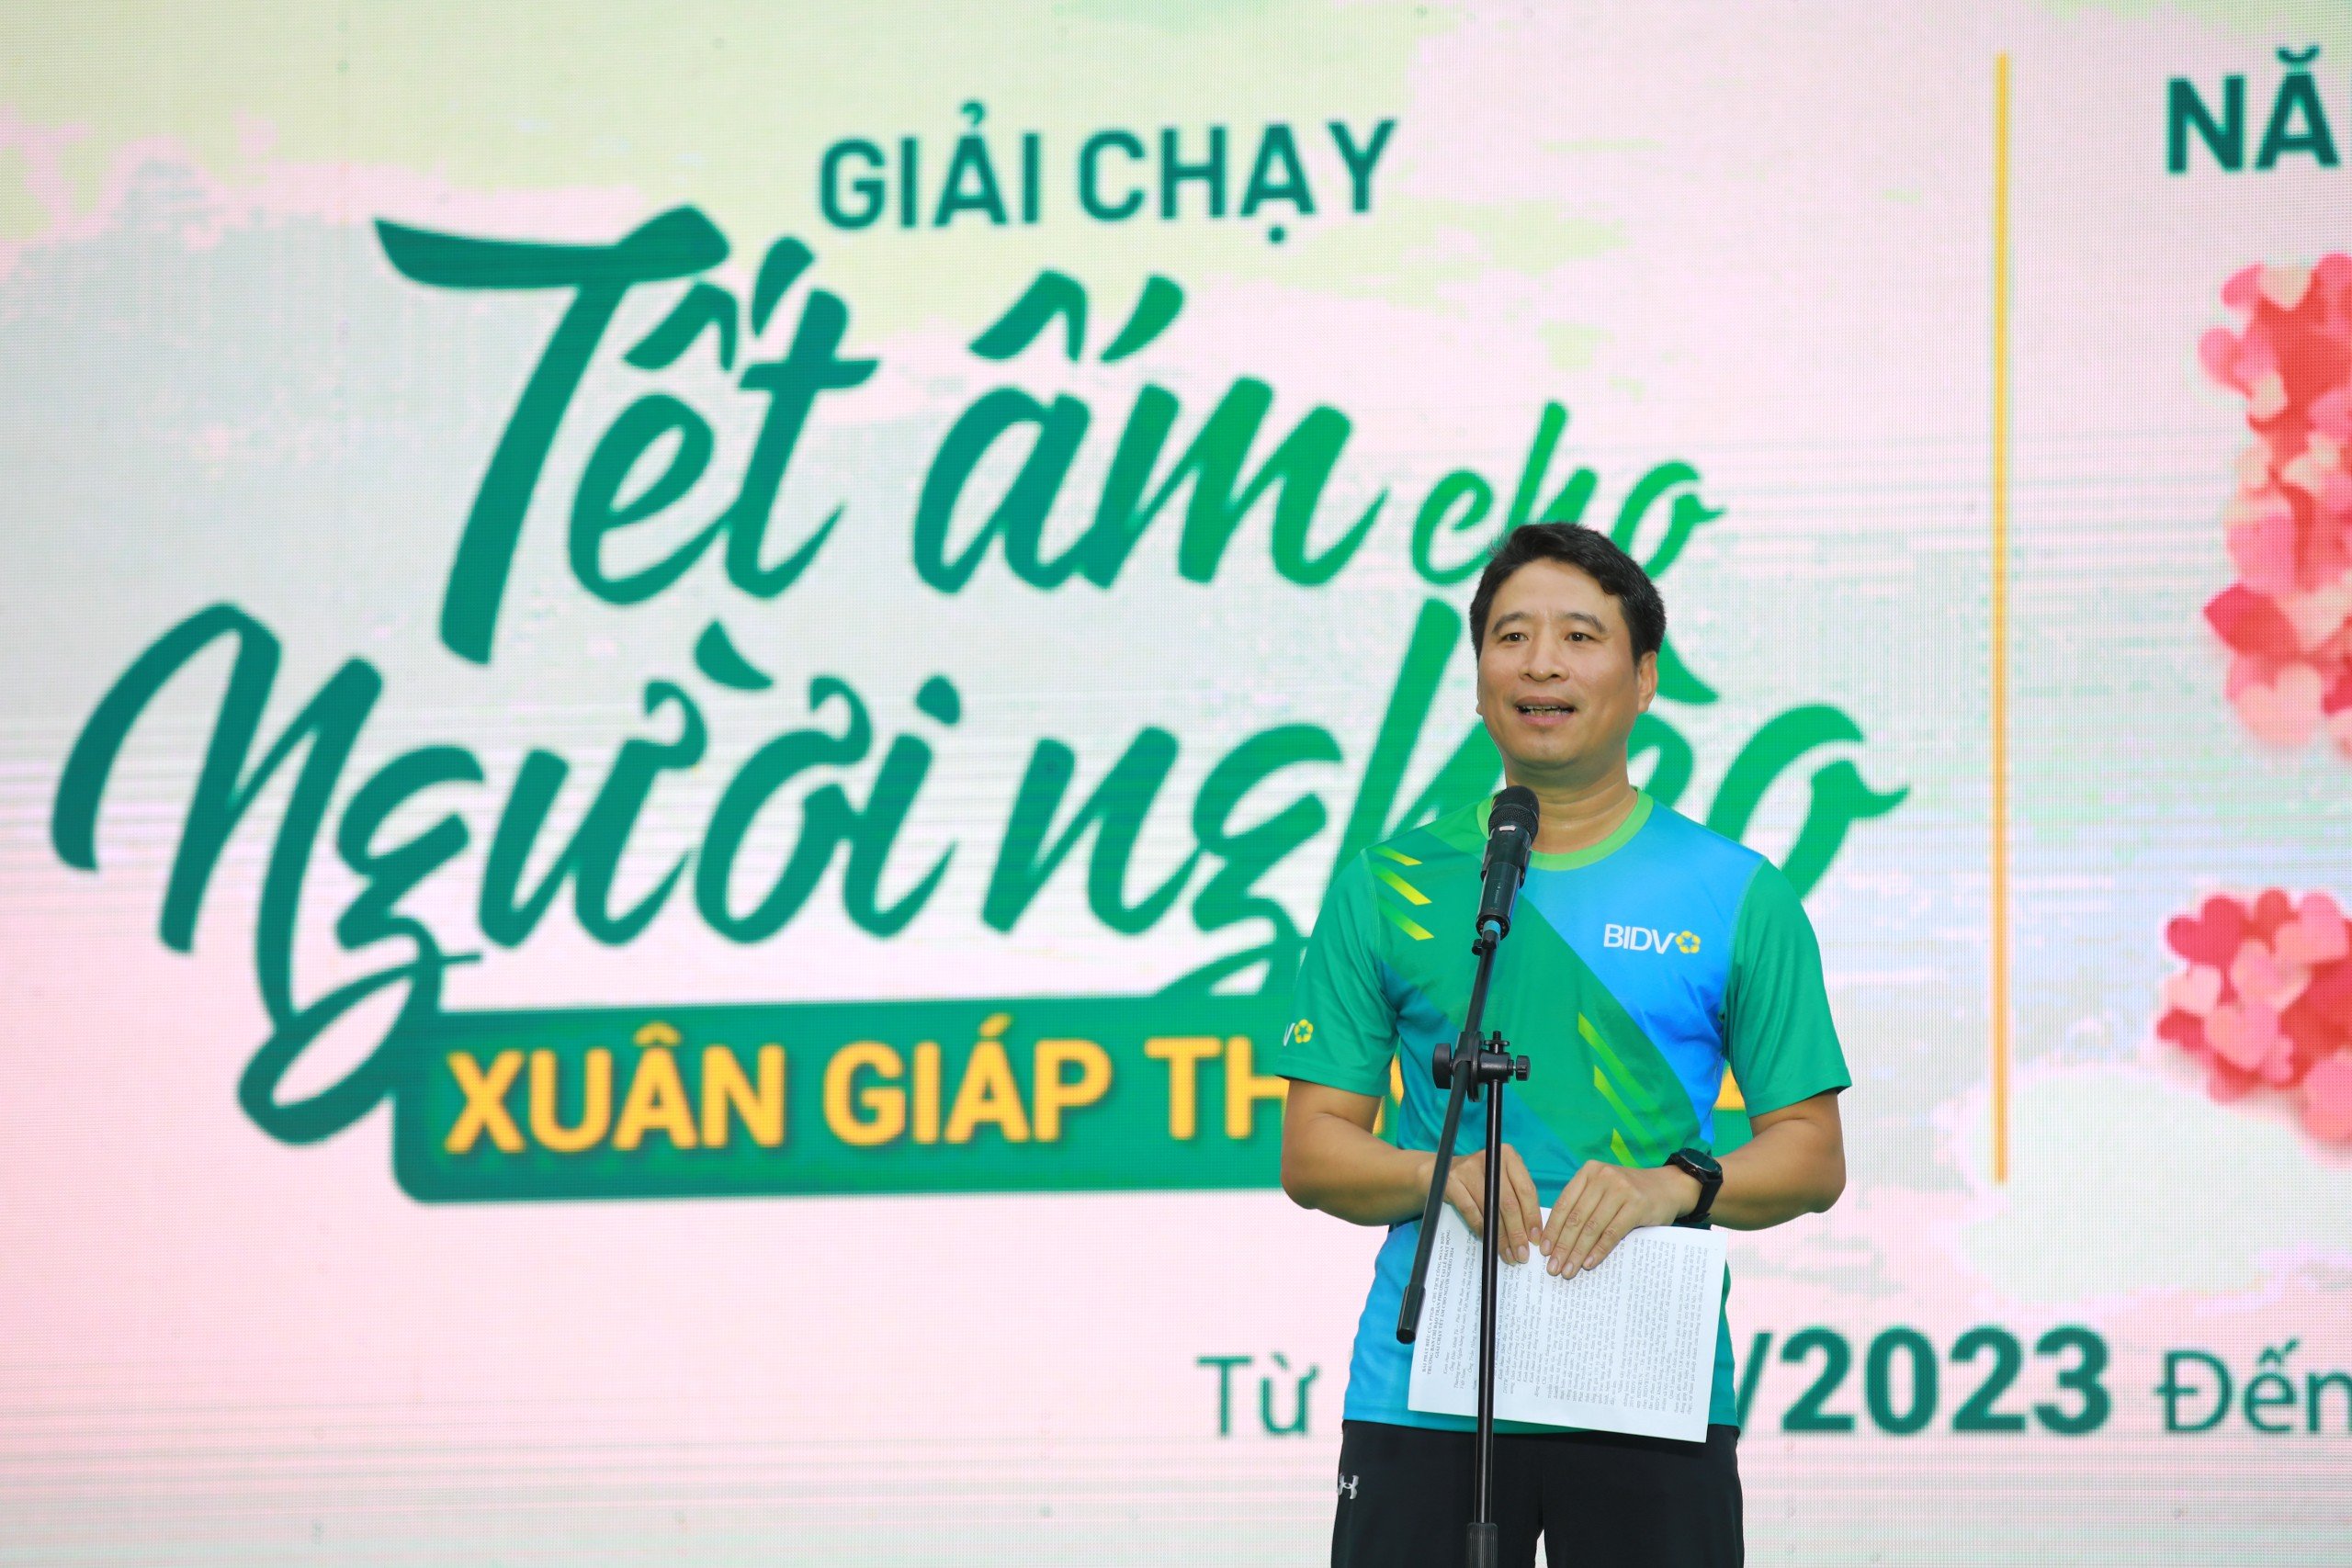 Trần Phương - Phó tổng giám đốc, Chủ tịch Công đoàn BIDV, Trưởng Ban Tổ chức Giải chạy phát động chương trình.